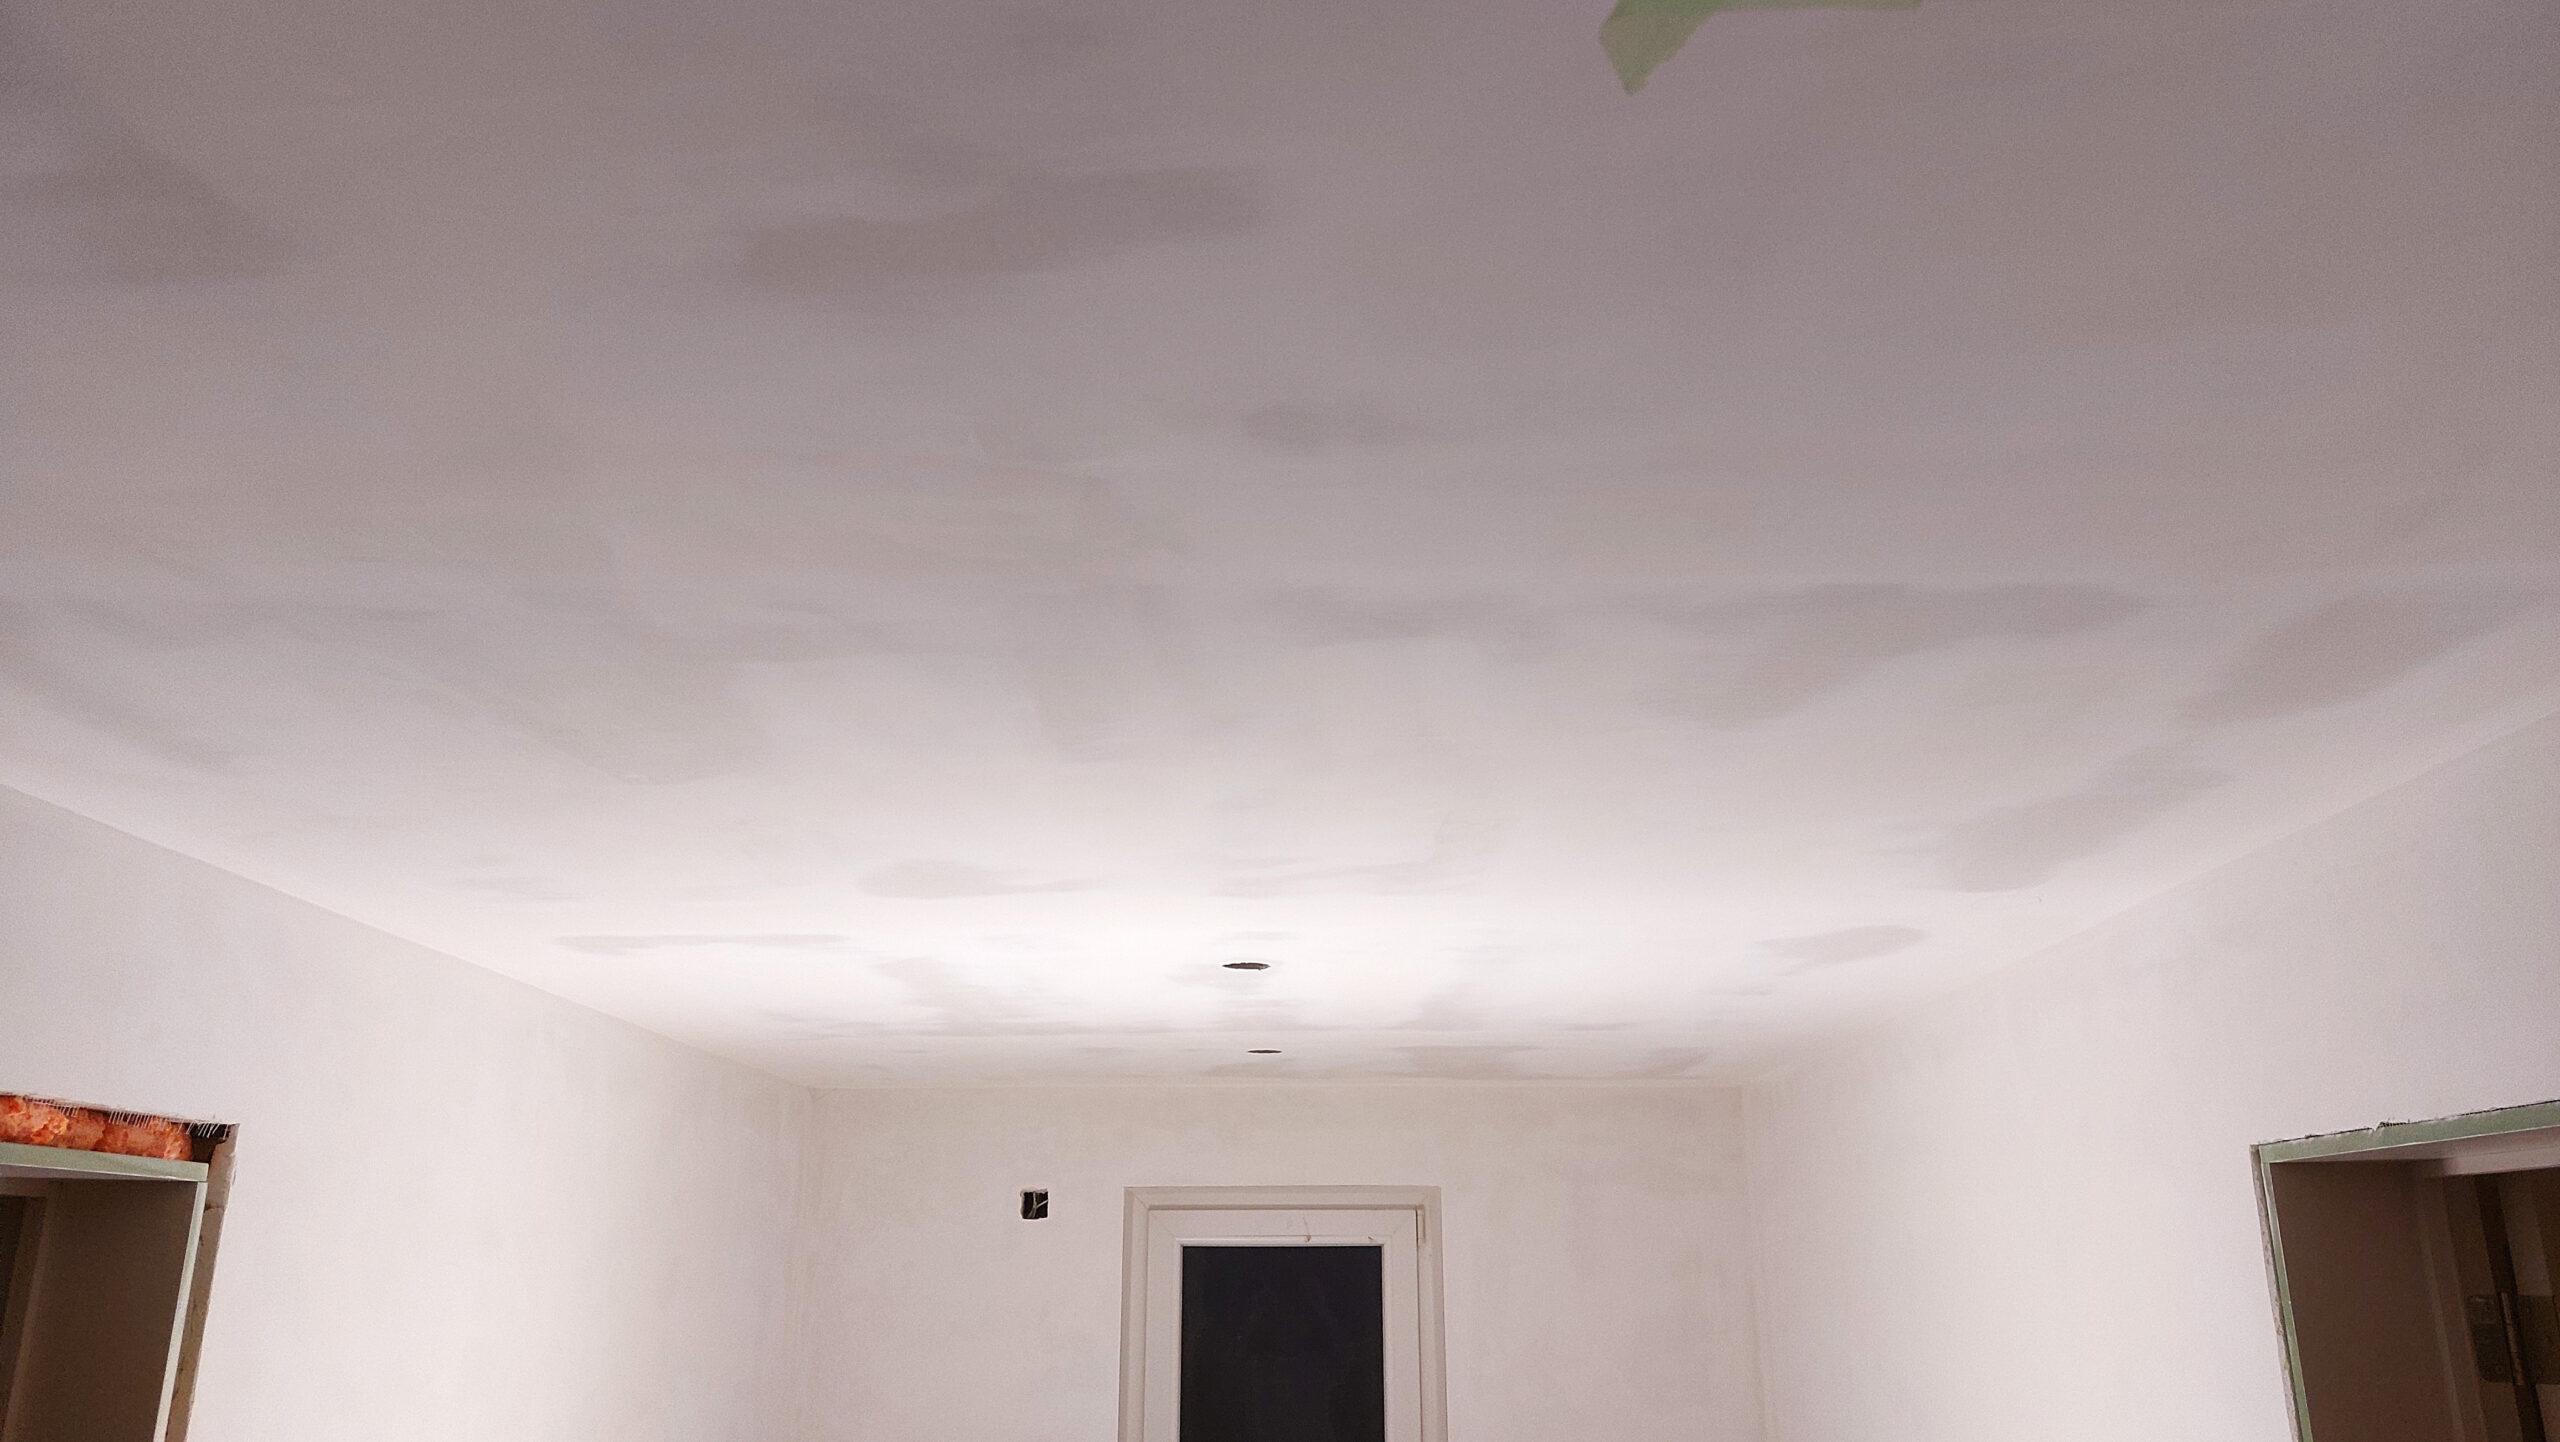 Een gyprocplafond, schilderklaar afgewerkt op kwaliteitsniveau Q3, geschuurd met korrel 180.